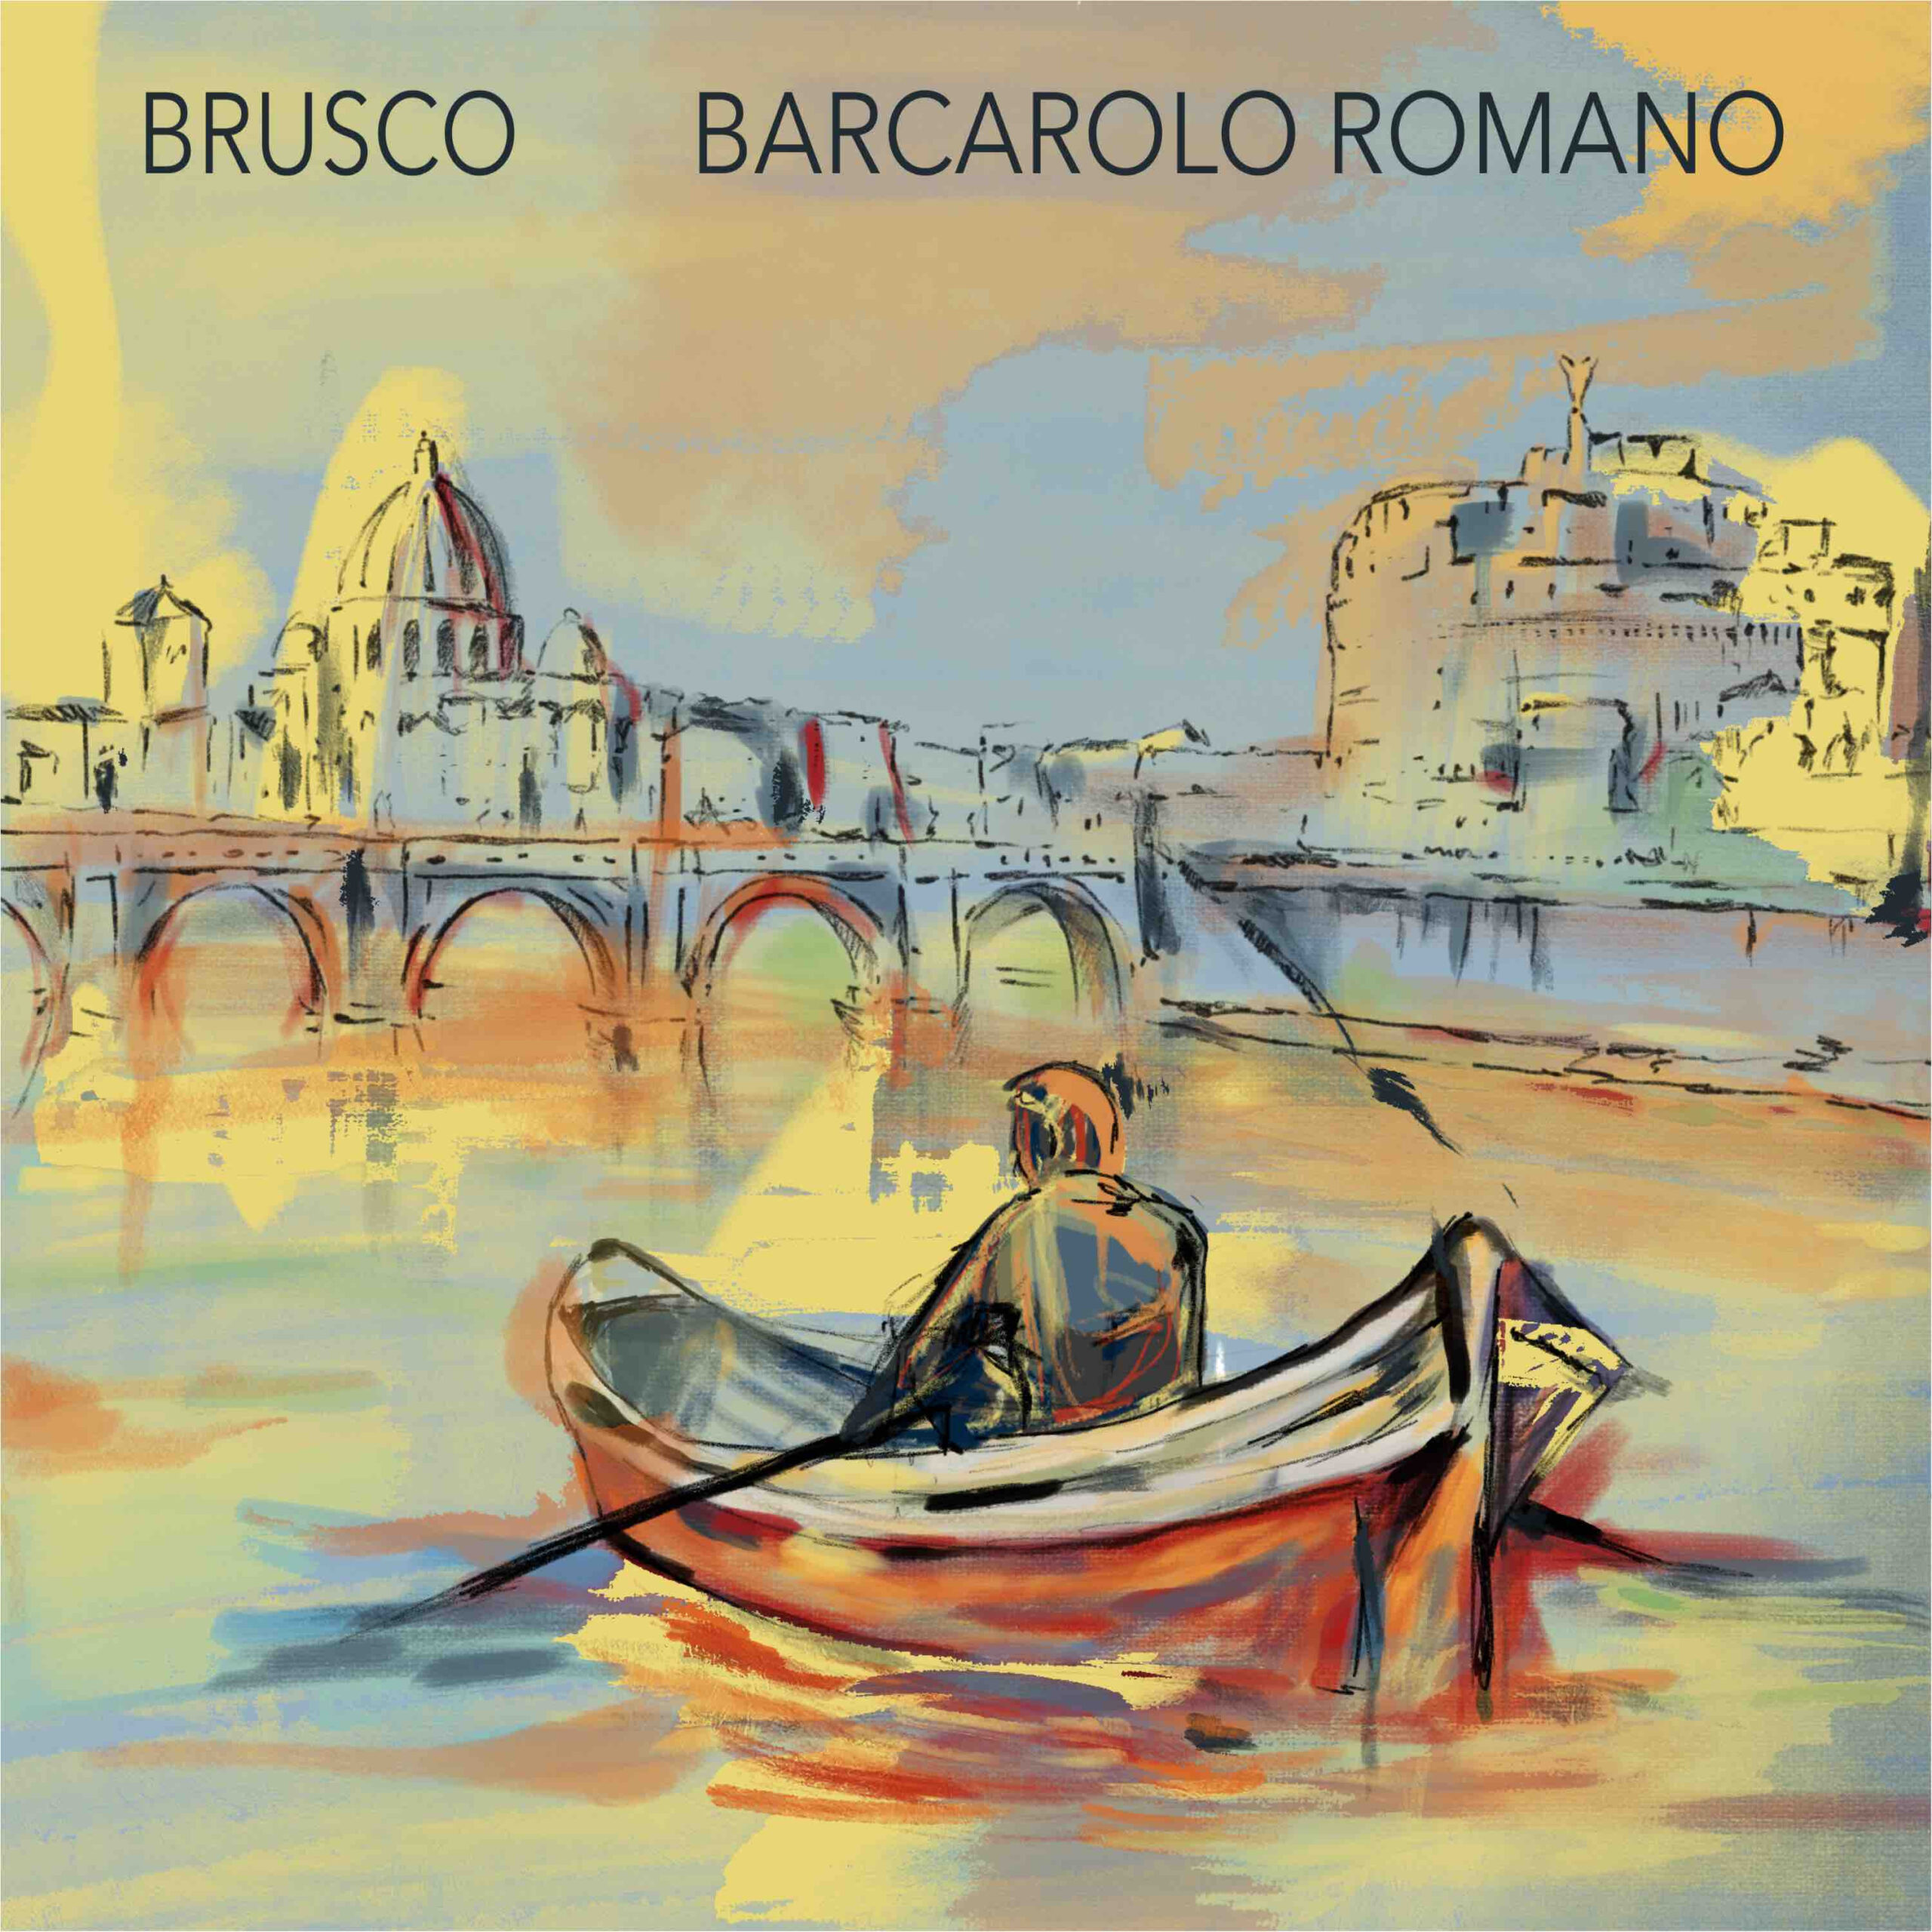 Brusco: venerdì 19 aprile il nuovo singolo “Barcarolo Romano”